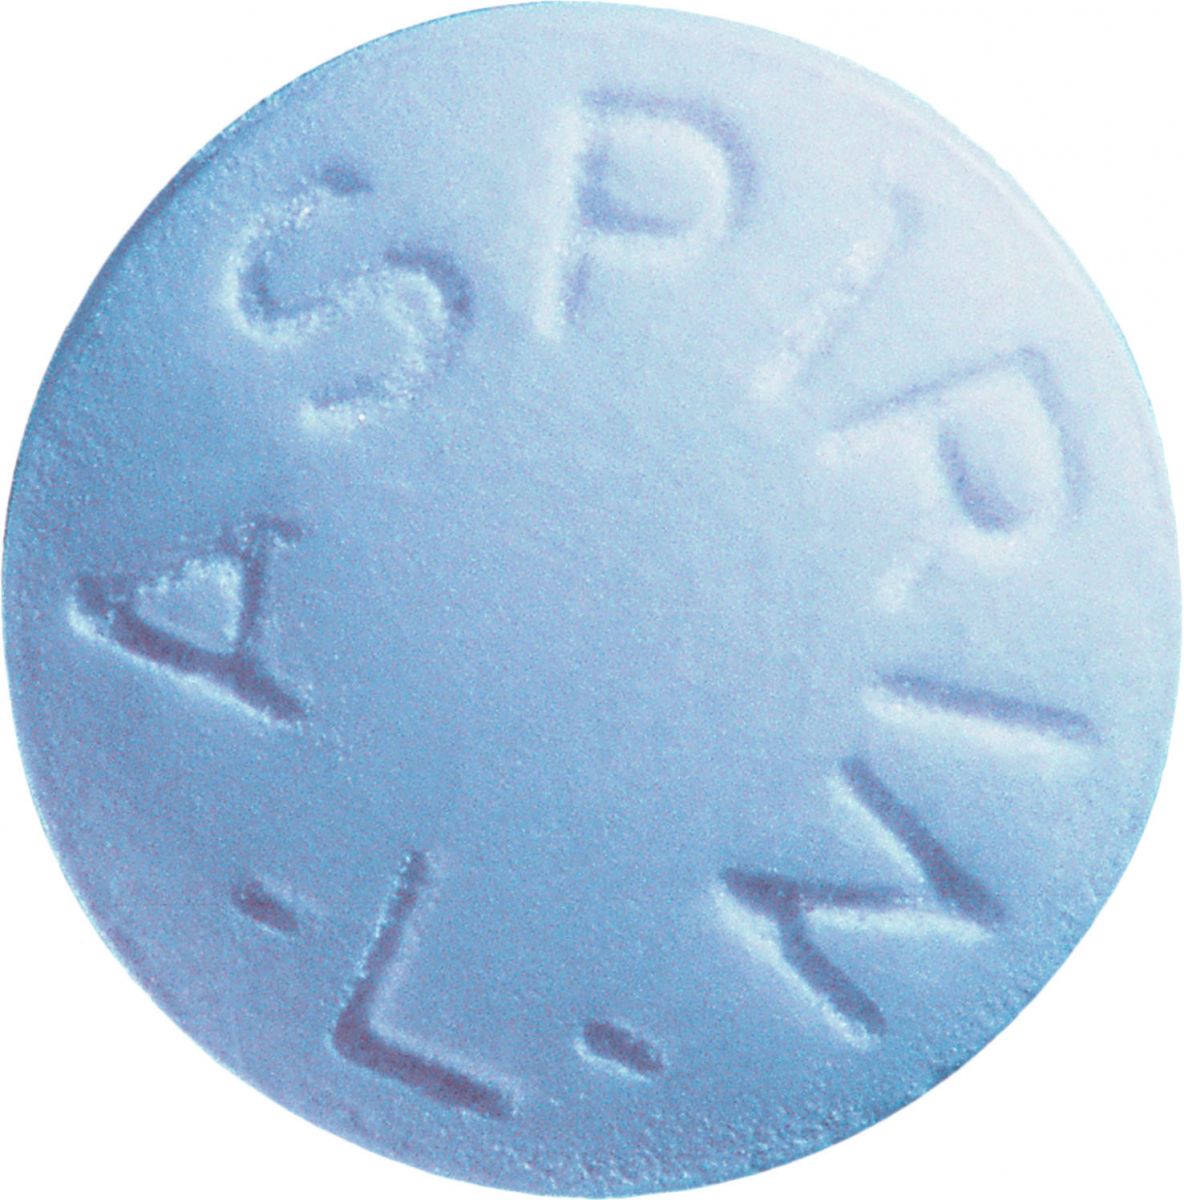 Image result for one aspirin